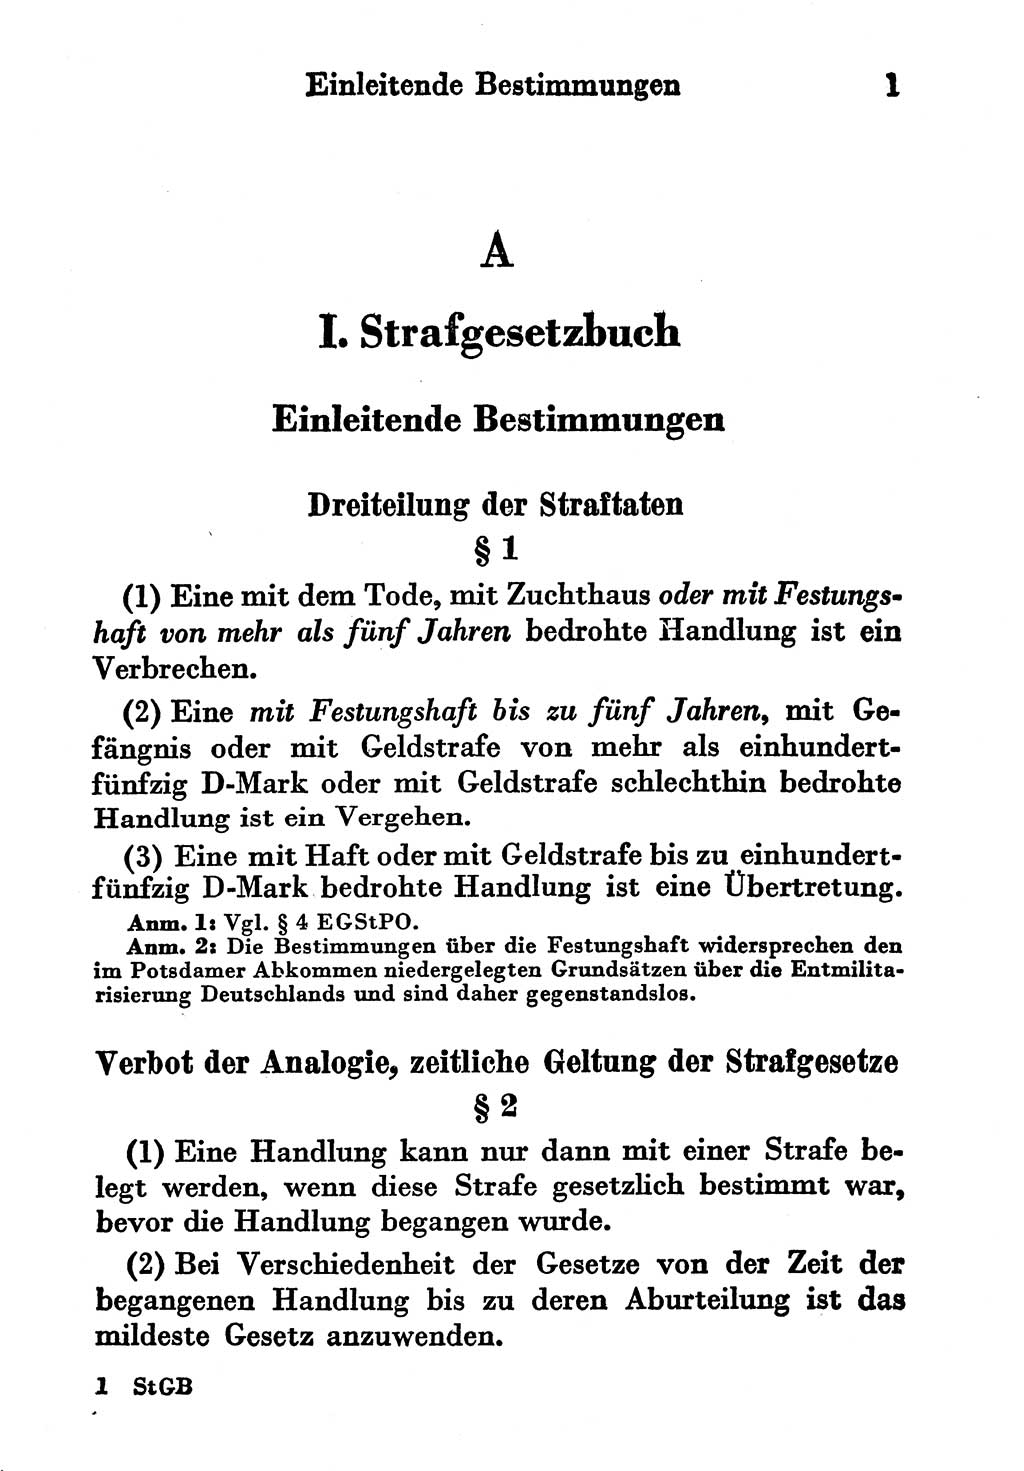 Strafgesetzbuch (StGB) und andere Strafgesetze [Deutsche Demokratische Republik (DDR)] 1956, Seite 1 (StGB Strafges. DDR 1956, S. 1)